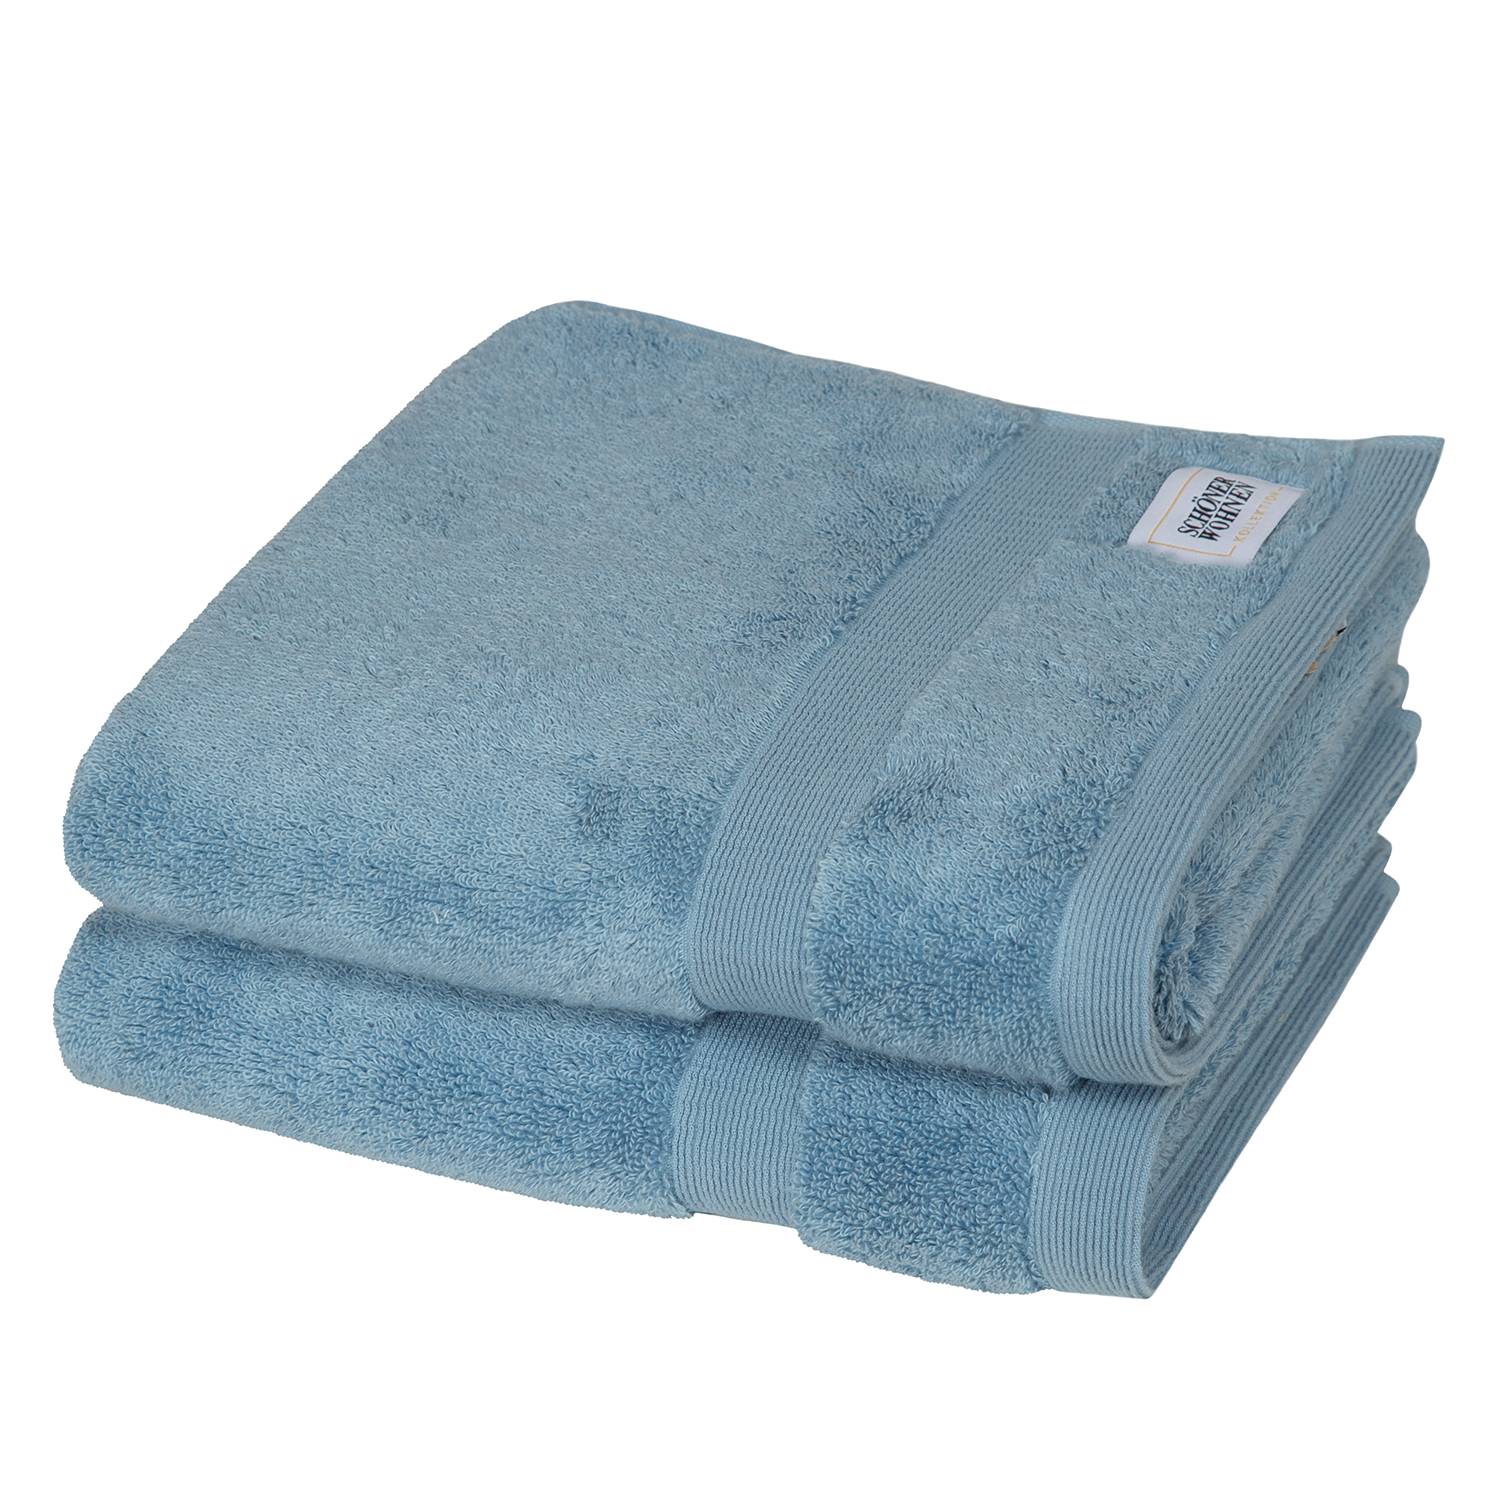 Handtücher Schöner kaufen | Wohnen Cuddly home24